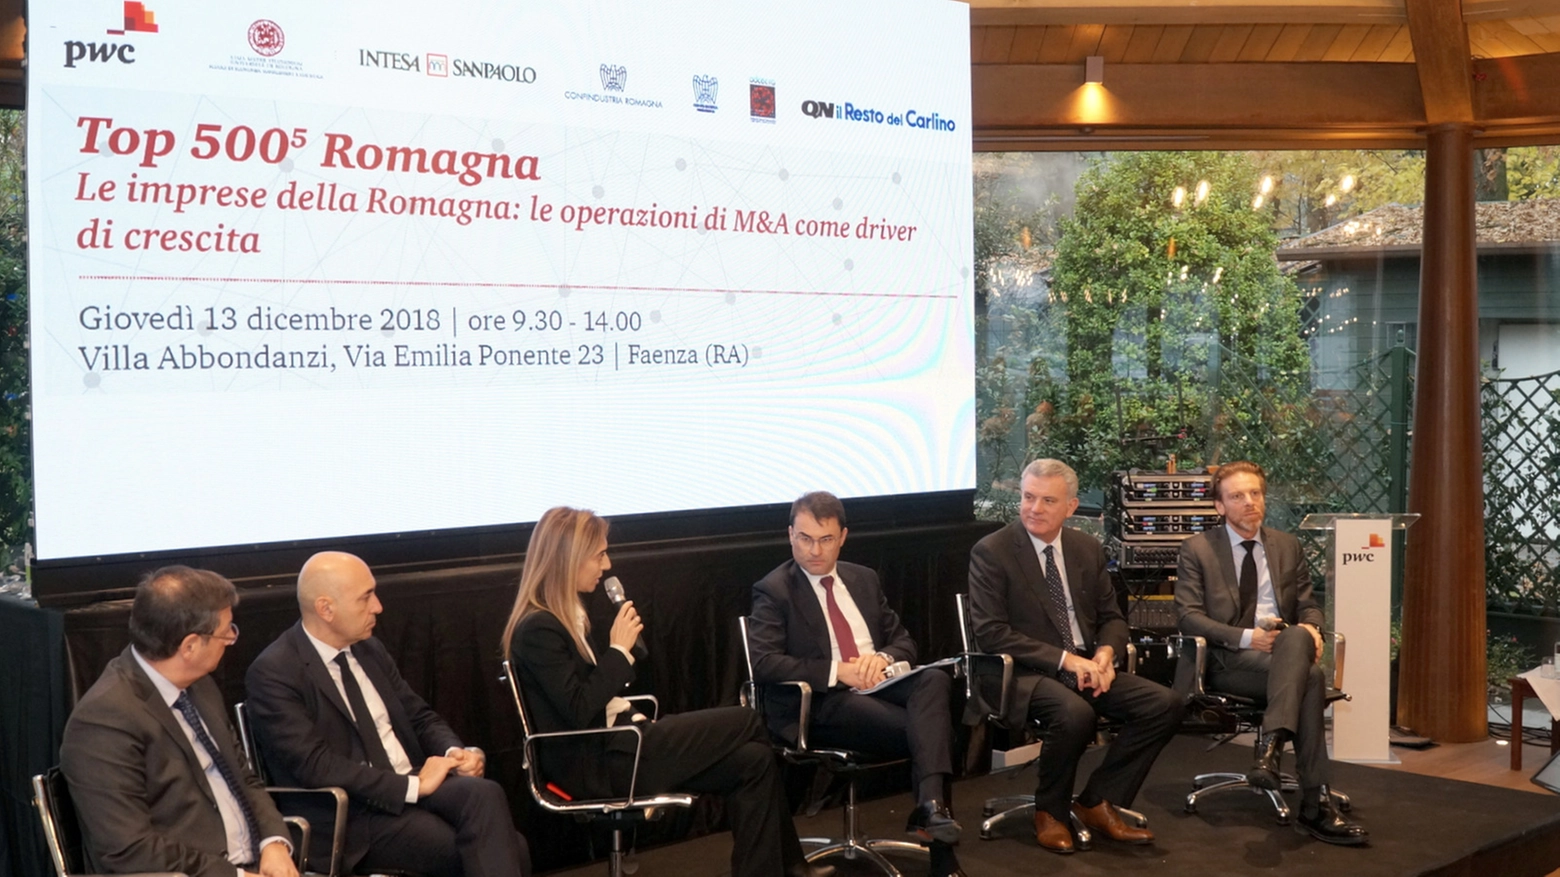 La presentazione di Top 500 aziende Romagna